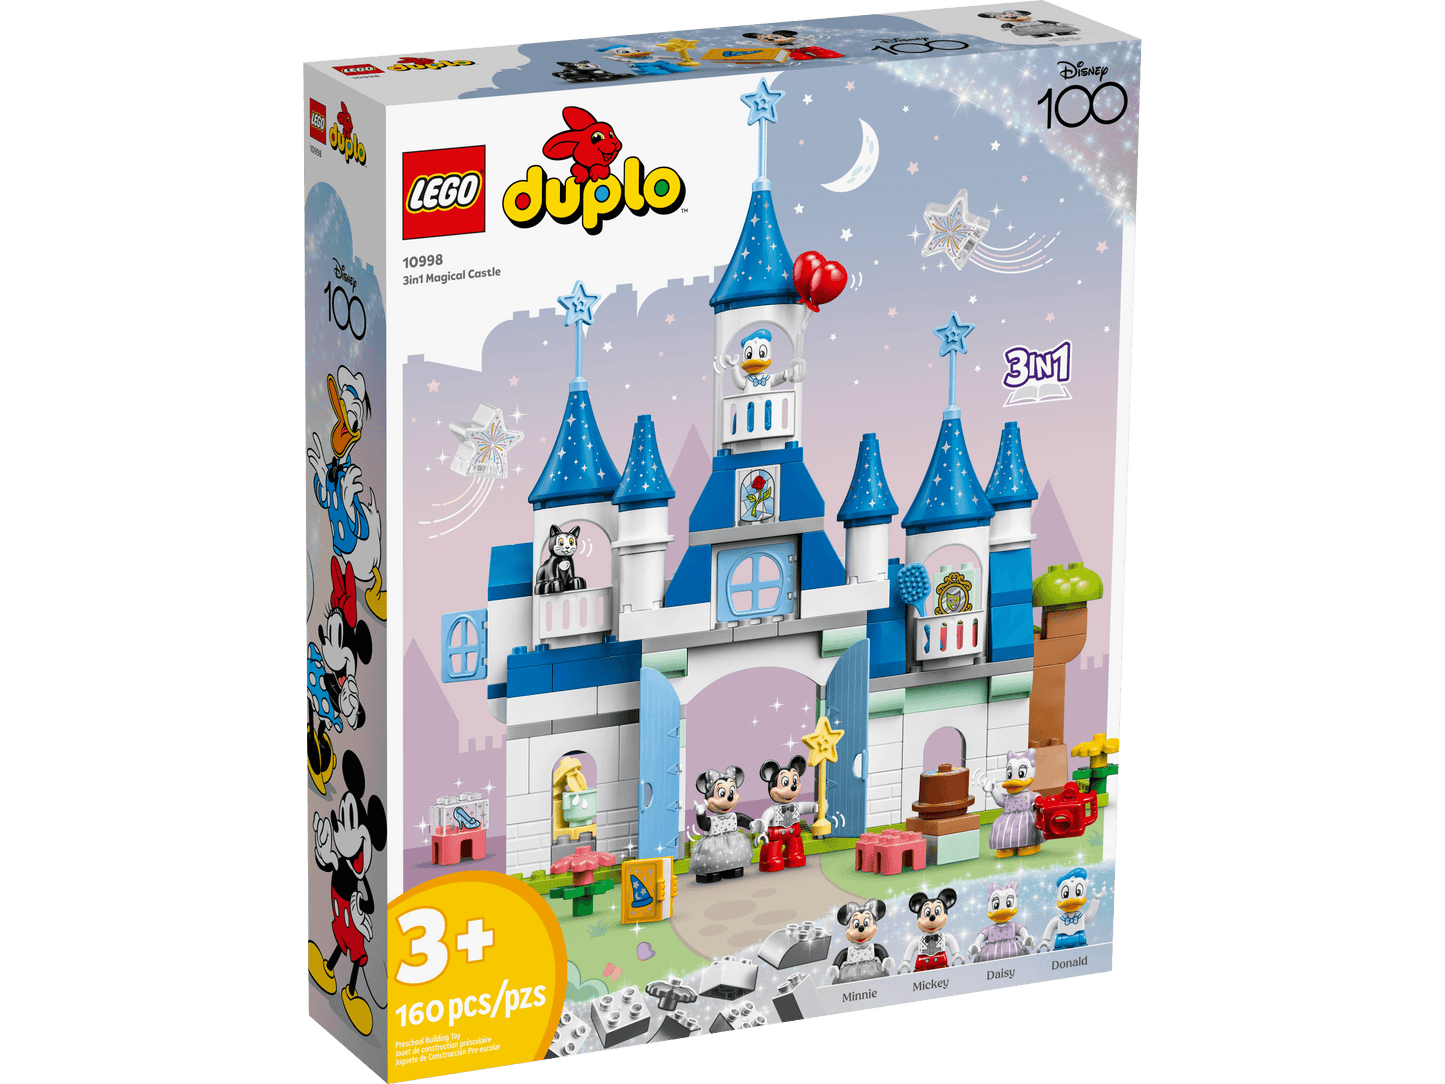 LEGO DUPLO Disney 3in1 Magic Castle 10998 Interactive Building Set (160 Pieces)